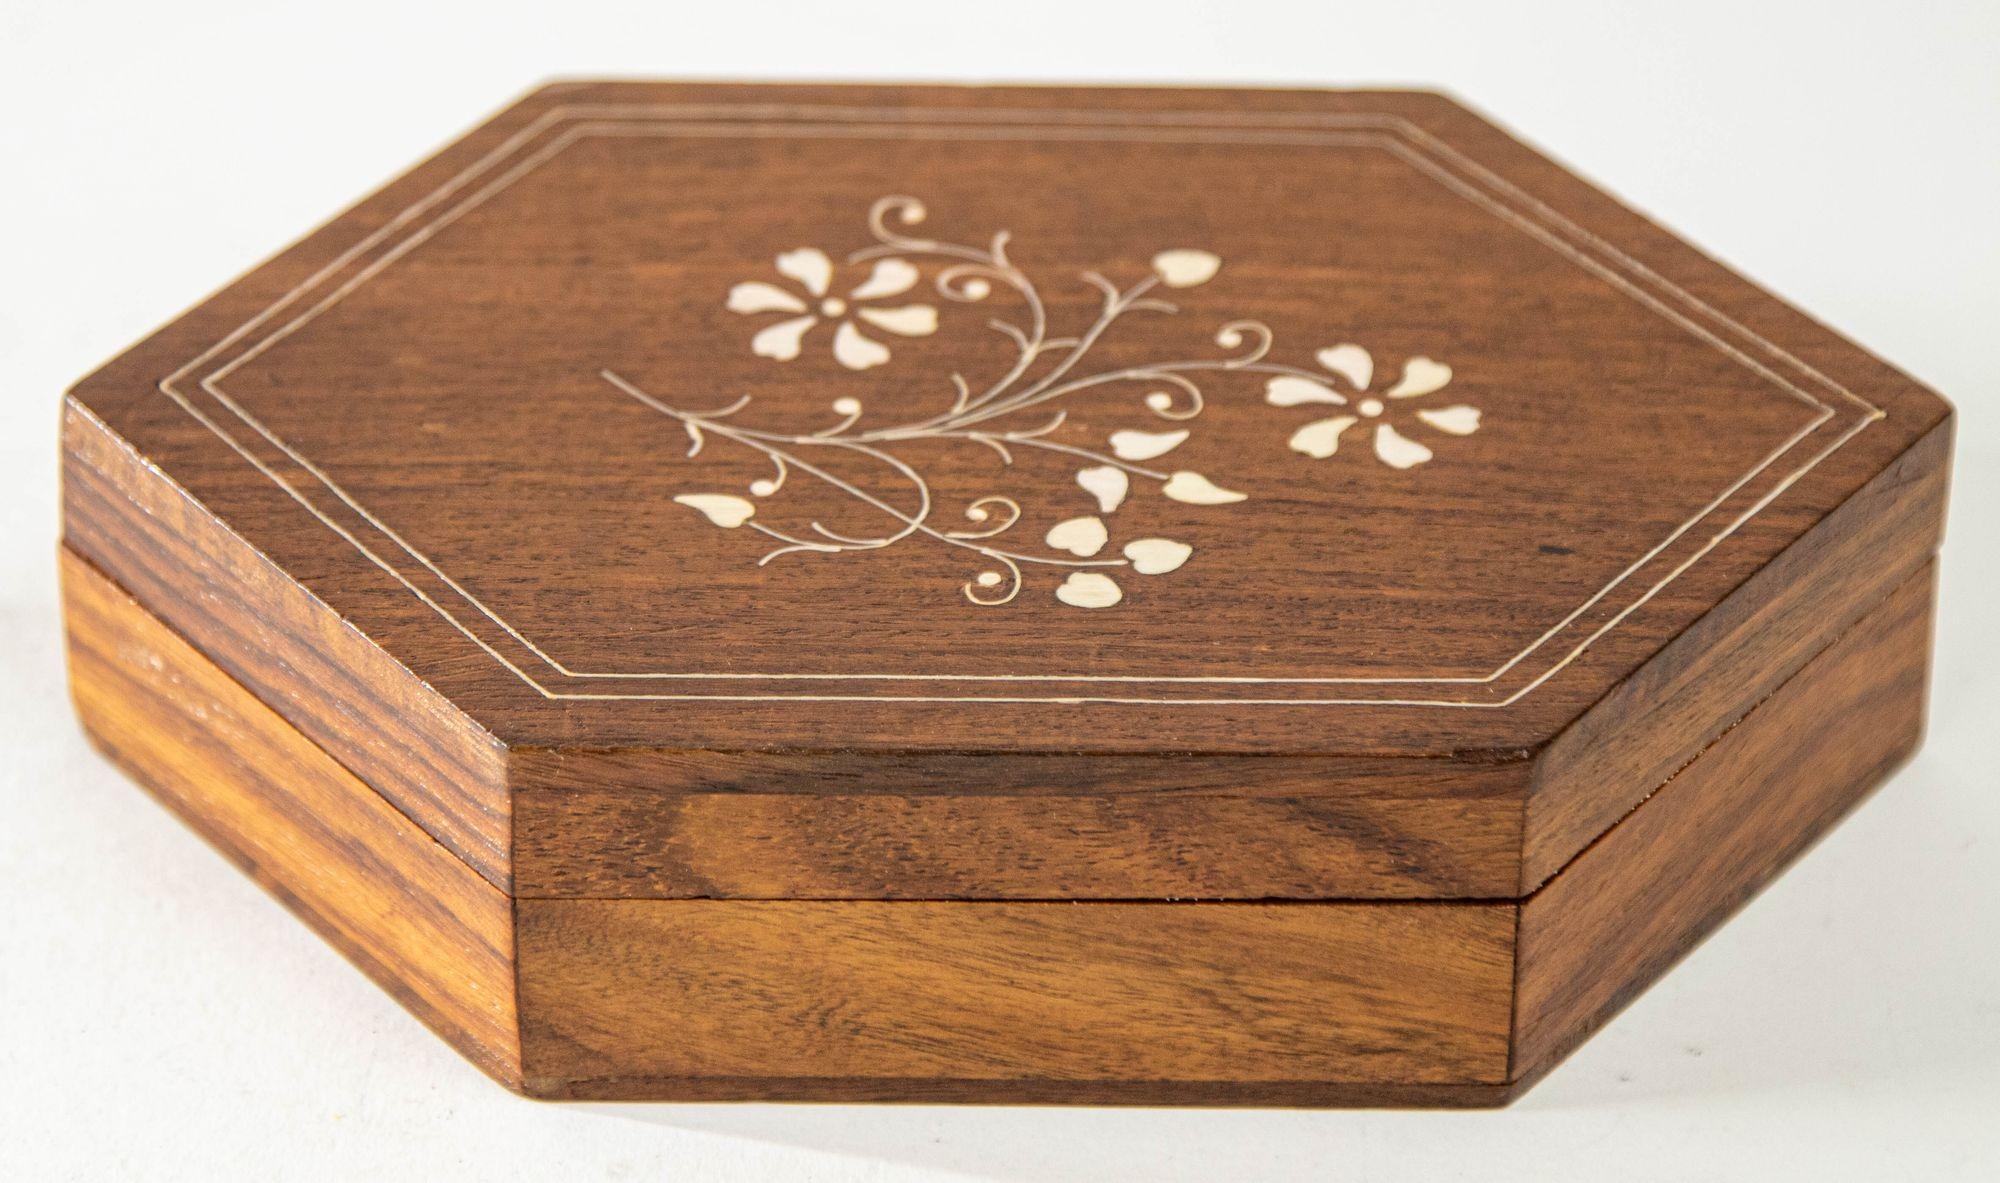 1960s Handcrafted Bone Inlaid Trinket Moroccan Wood Trinket Box.
Handgemachte handwerkliche Mitte Jahrhundert eingelegt Schmuckstück dekorativen Deckel marokkanischen Box.
Diese sechseckige, dekorative Schachtel hat eine komplizierte Blumenintarsie